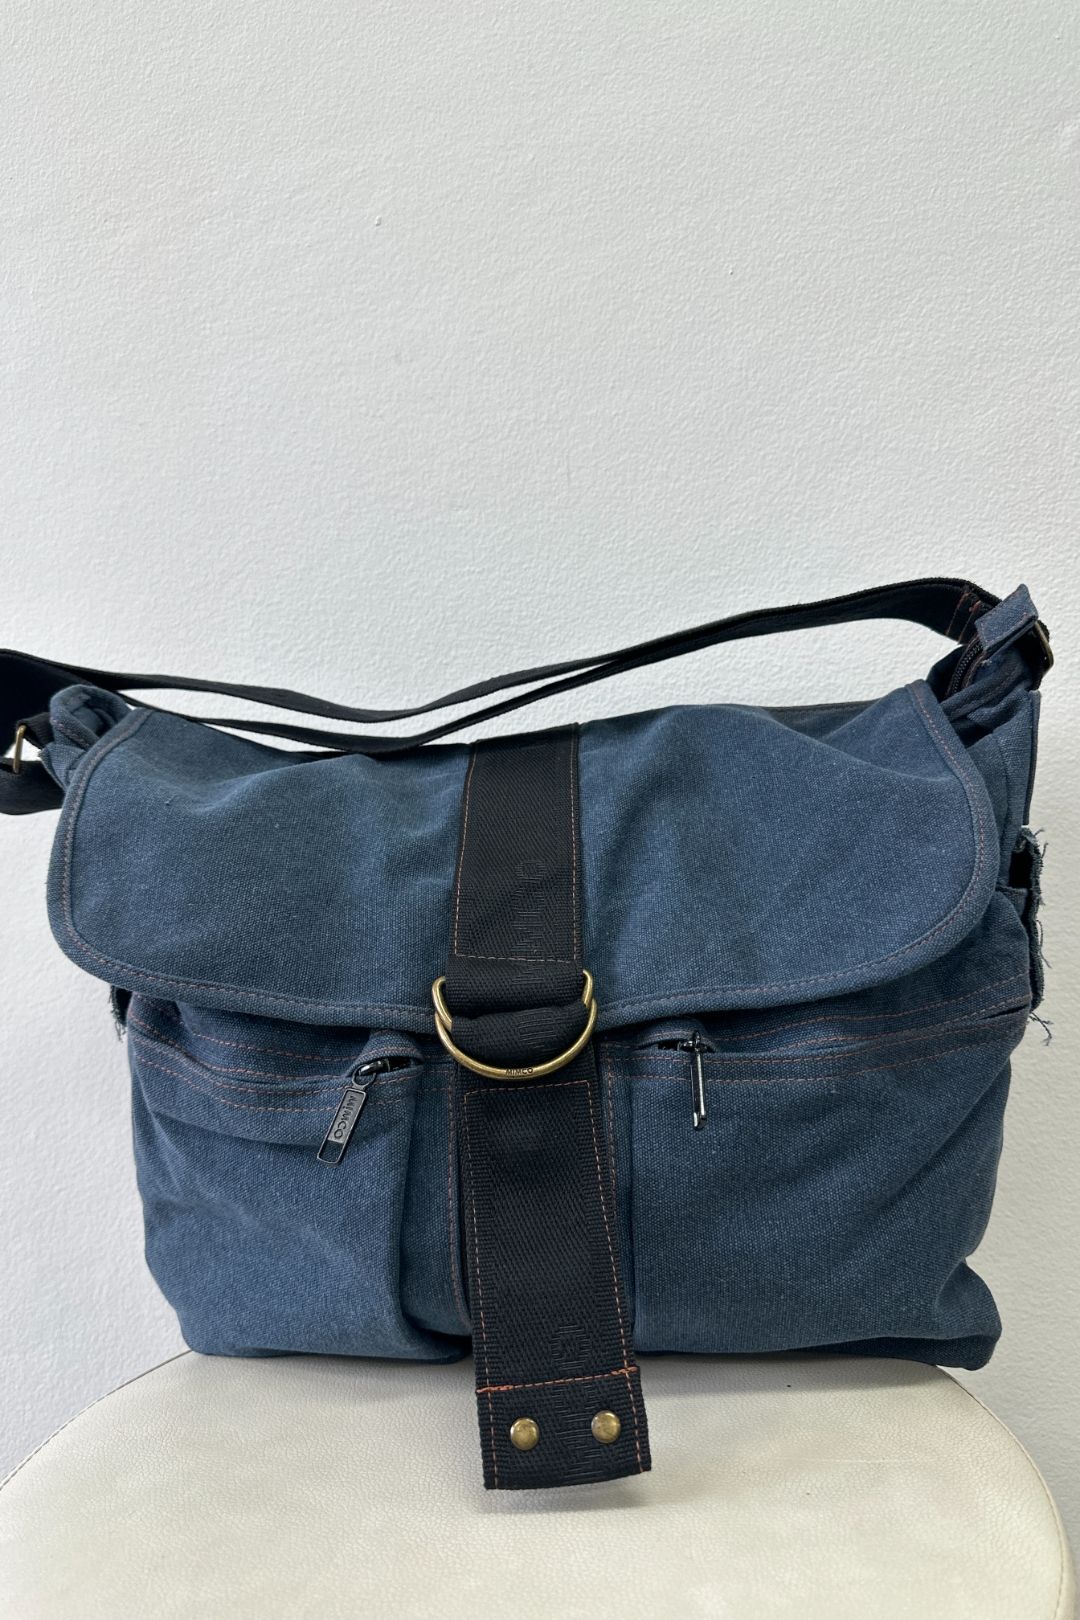 Blue and Black Messenger Bag